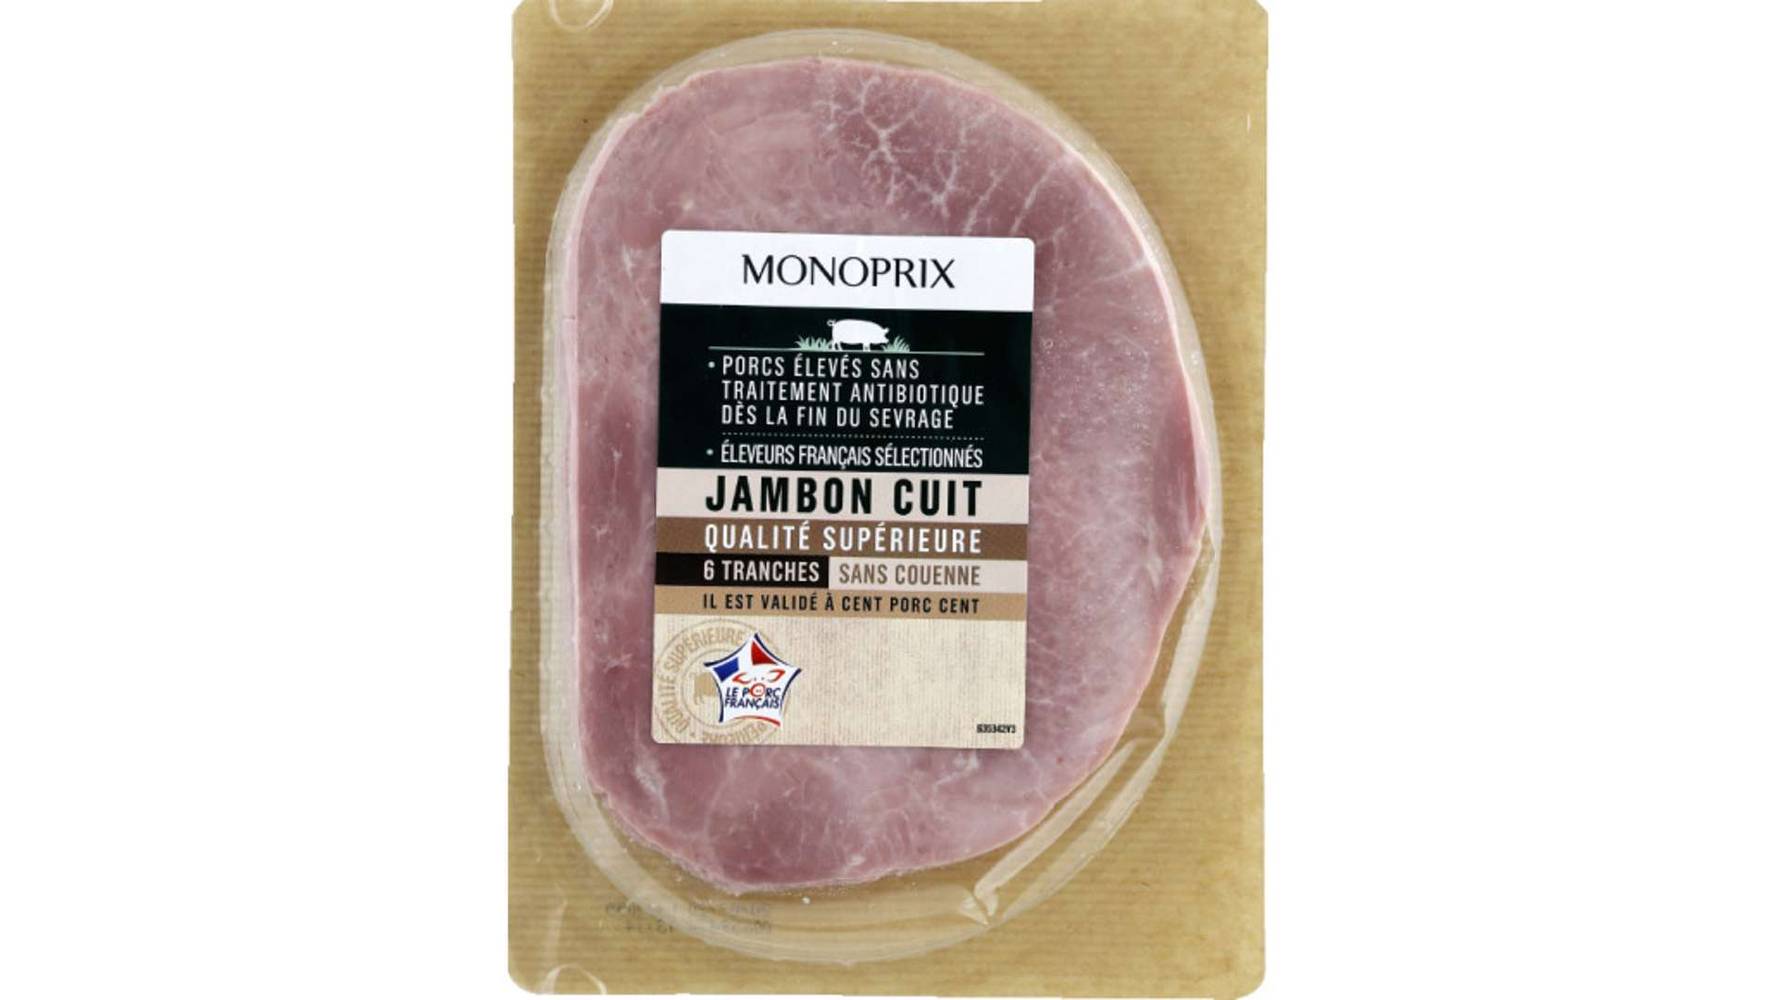 Monoprix Jambon cuit qualité supérieure sans couenne Les 6 tranches - 240 g